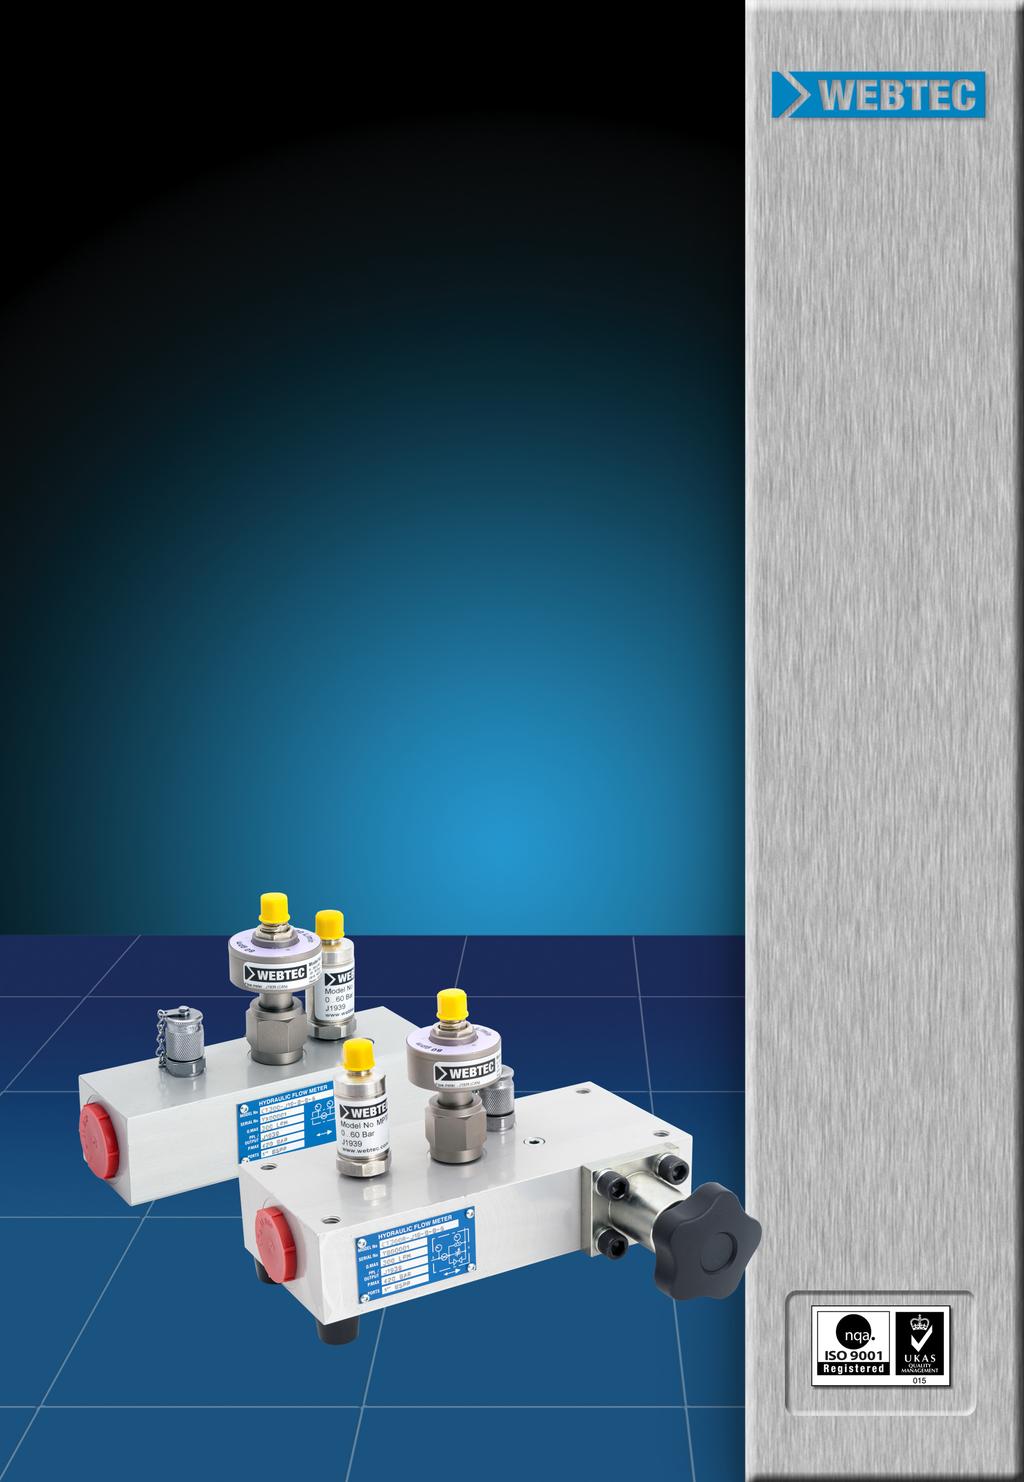 SAE J1939 CAN-kompatible Sensoren zur Durchfluss-, Druck- und Temperaturüberwachung von Pumpen, Ventilen und hydrostatischen Getrieben in Hydrauliksystemen Bis zu 1500 l/min (400 US-gal/min)